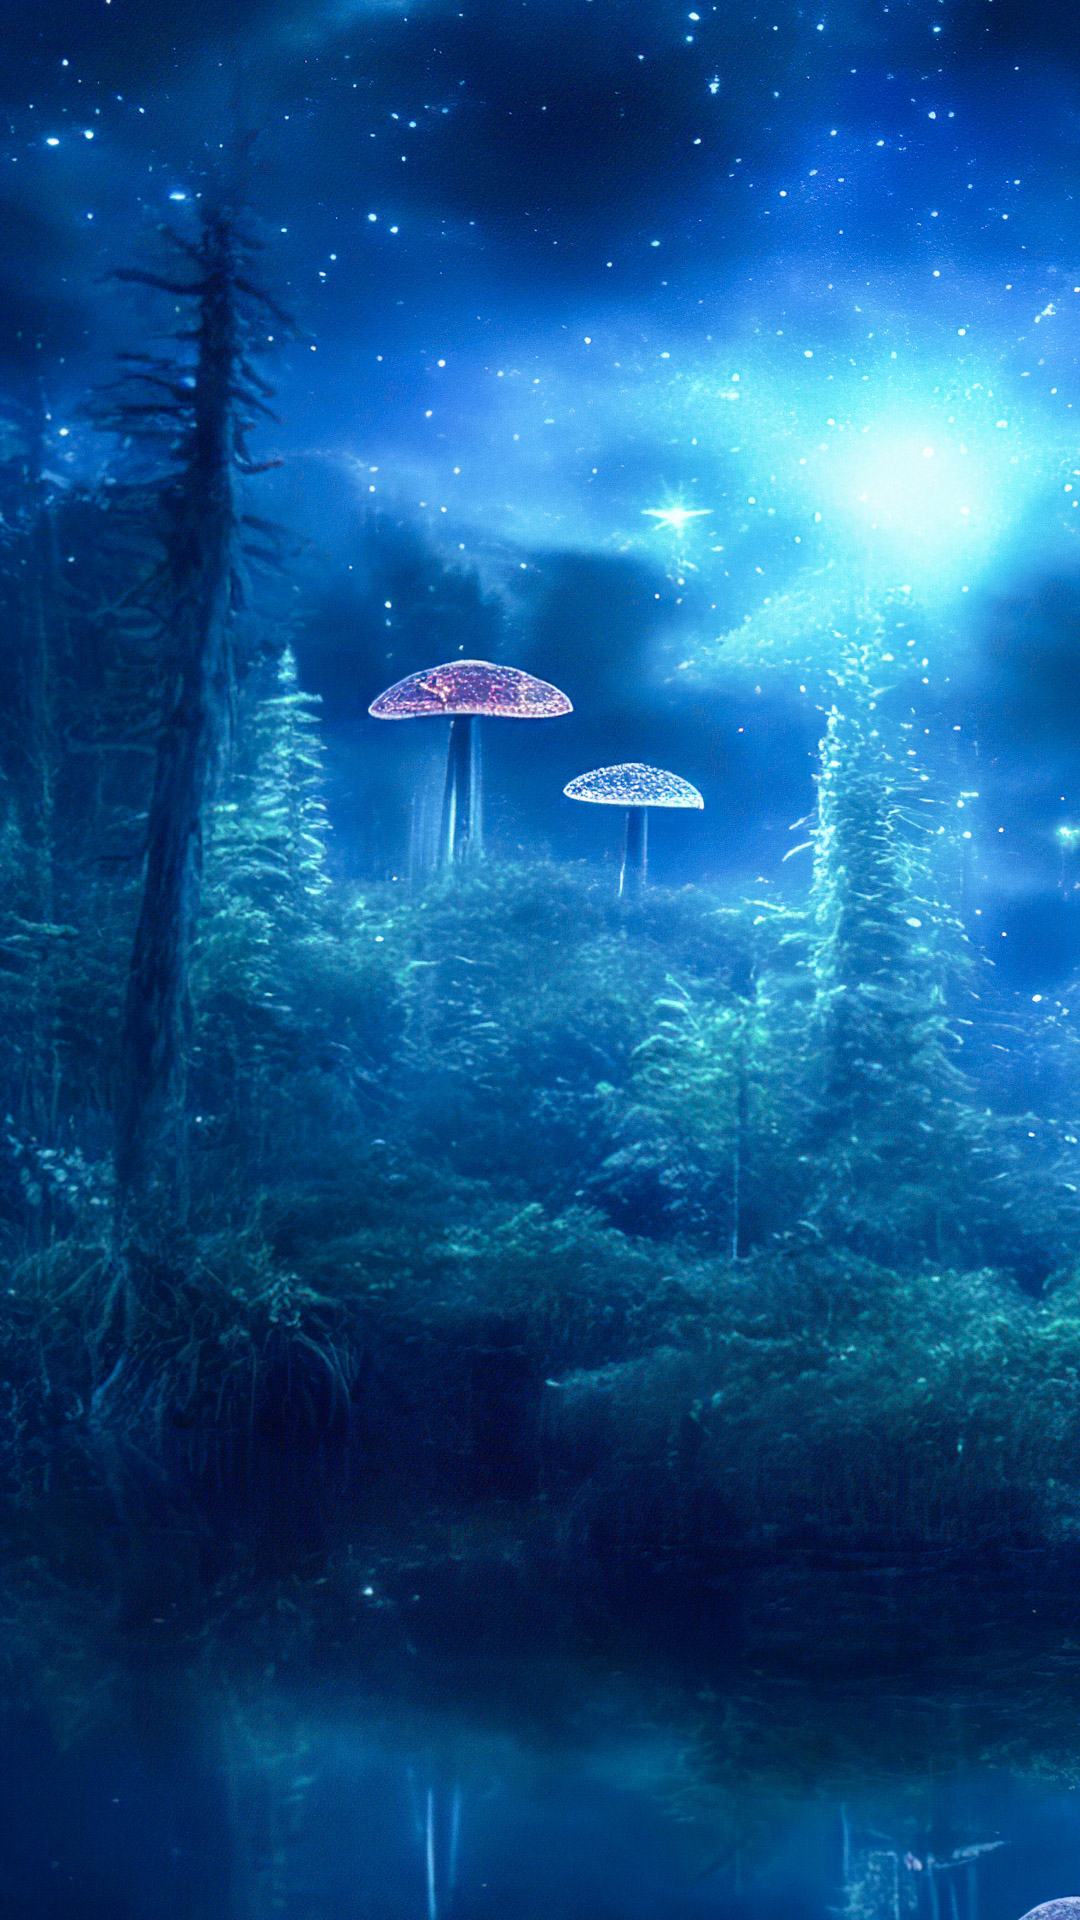 Transformez votre téléphone avec nos fonds d'écran de nature en HD, illustrant une clairière mystique avec des champignons bioluminescents, créant une scène enchantée et surnaturelle.